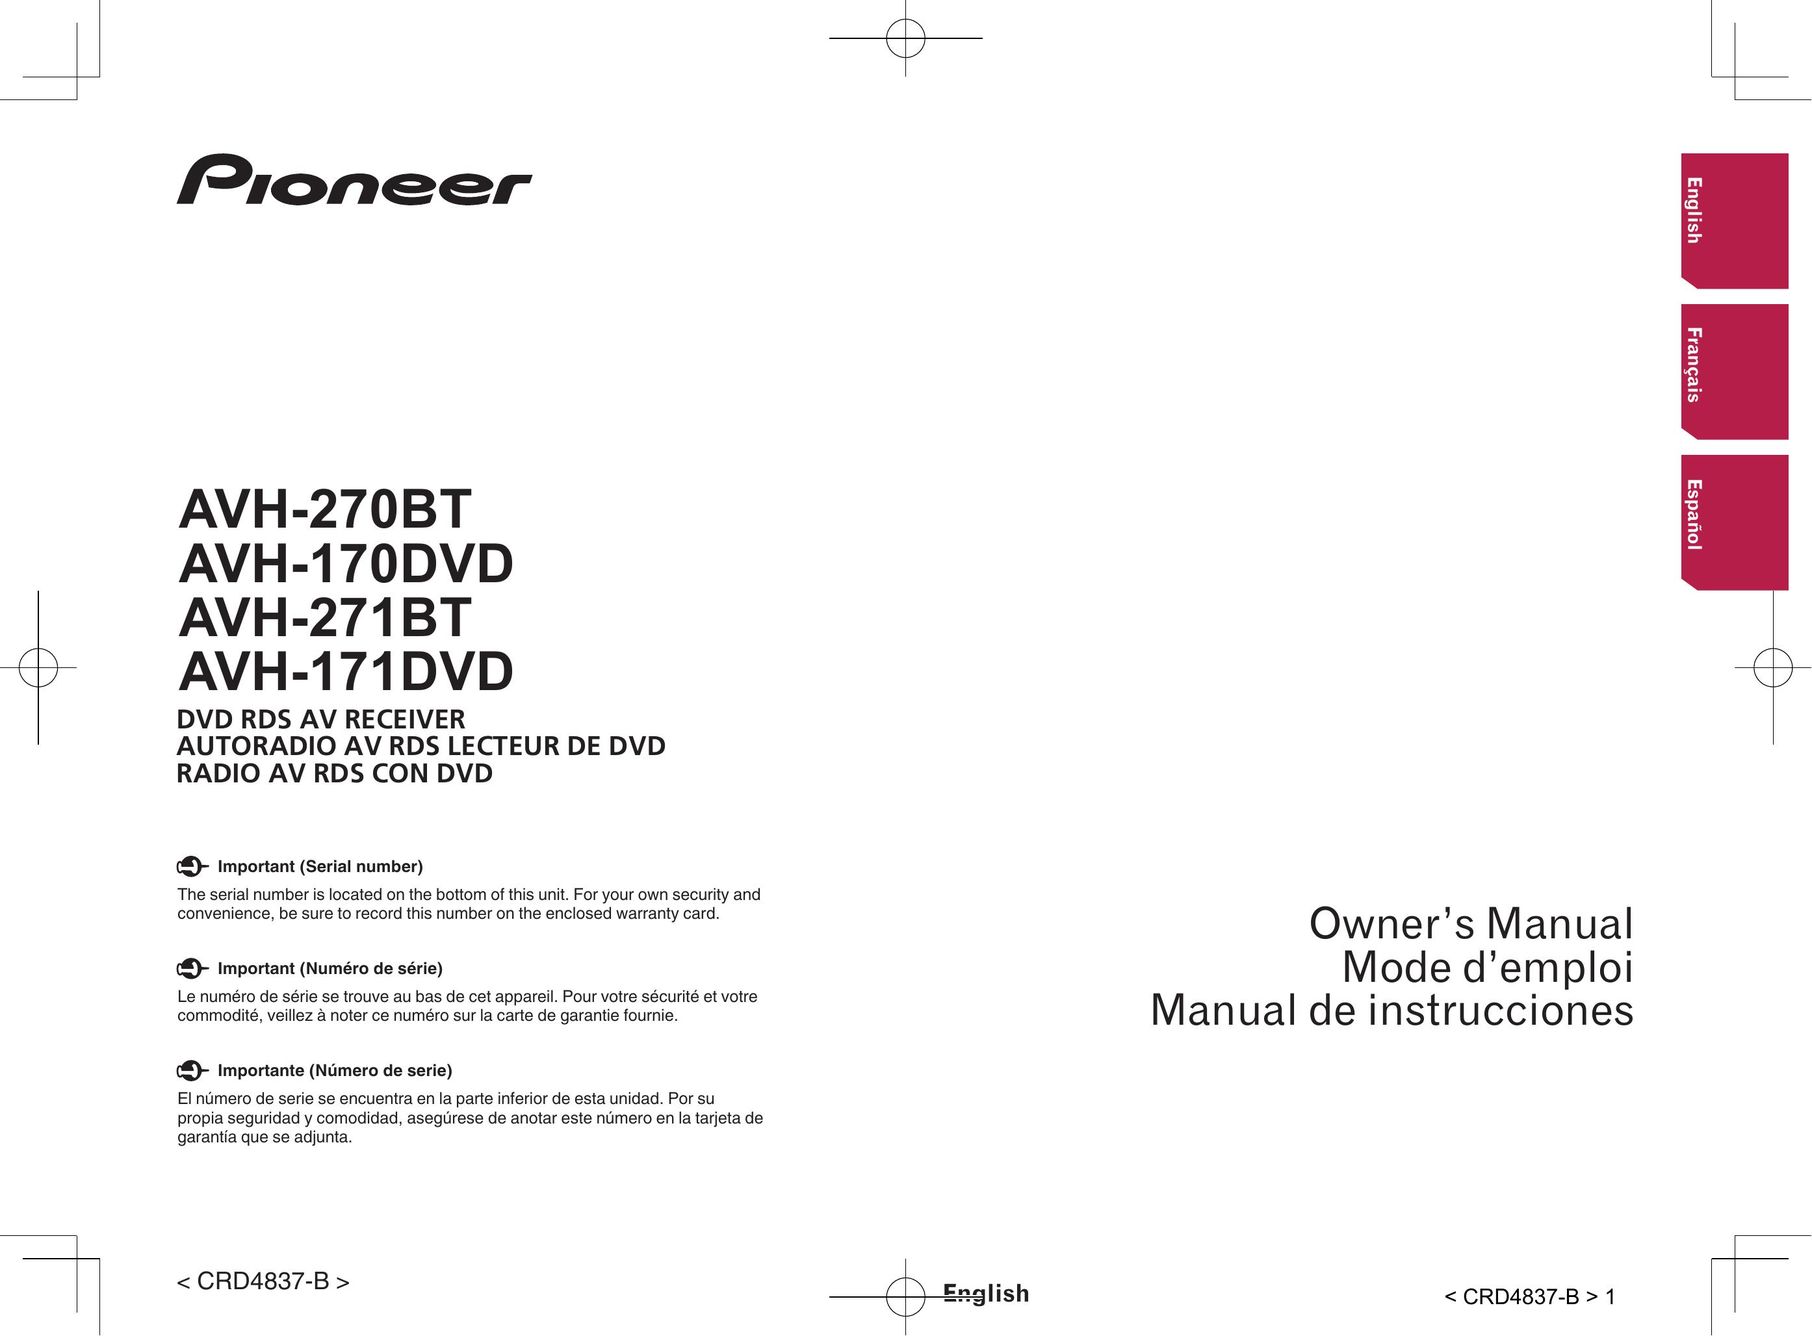 Pioneer AVH-270BT TV Video Accessories User Manual